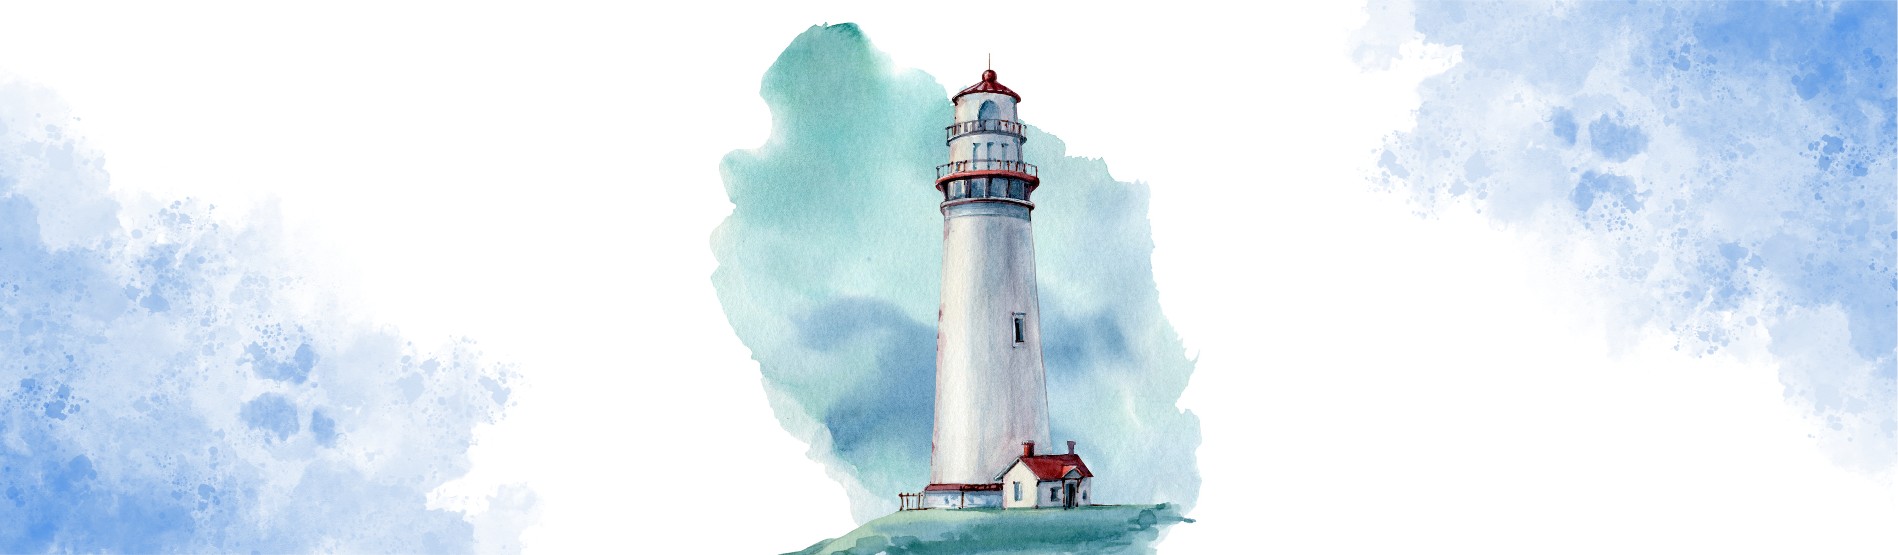 CampusLife lighthouse logo